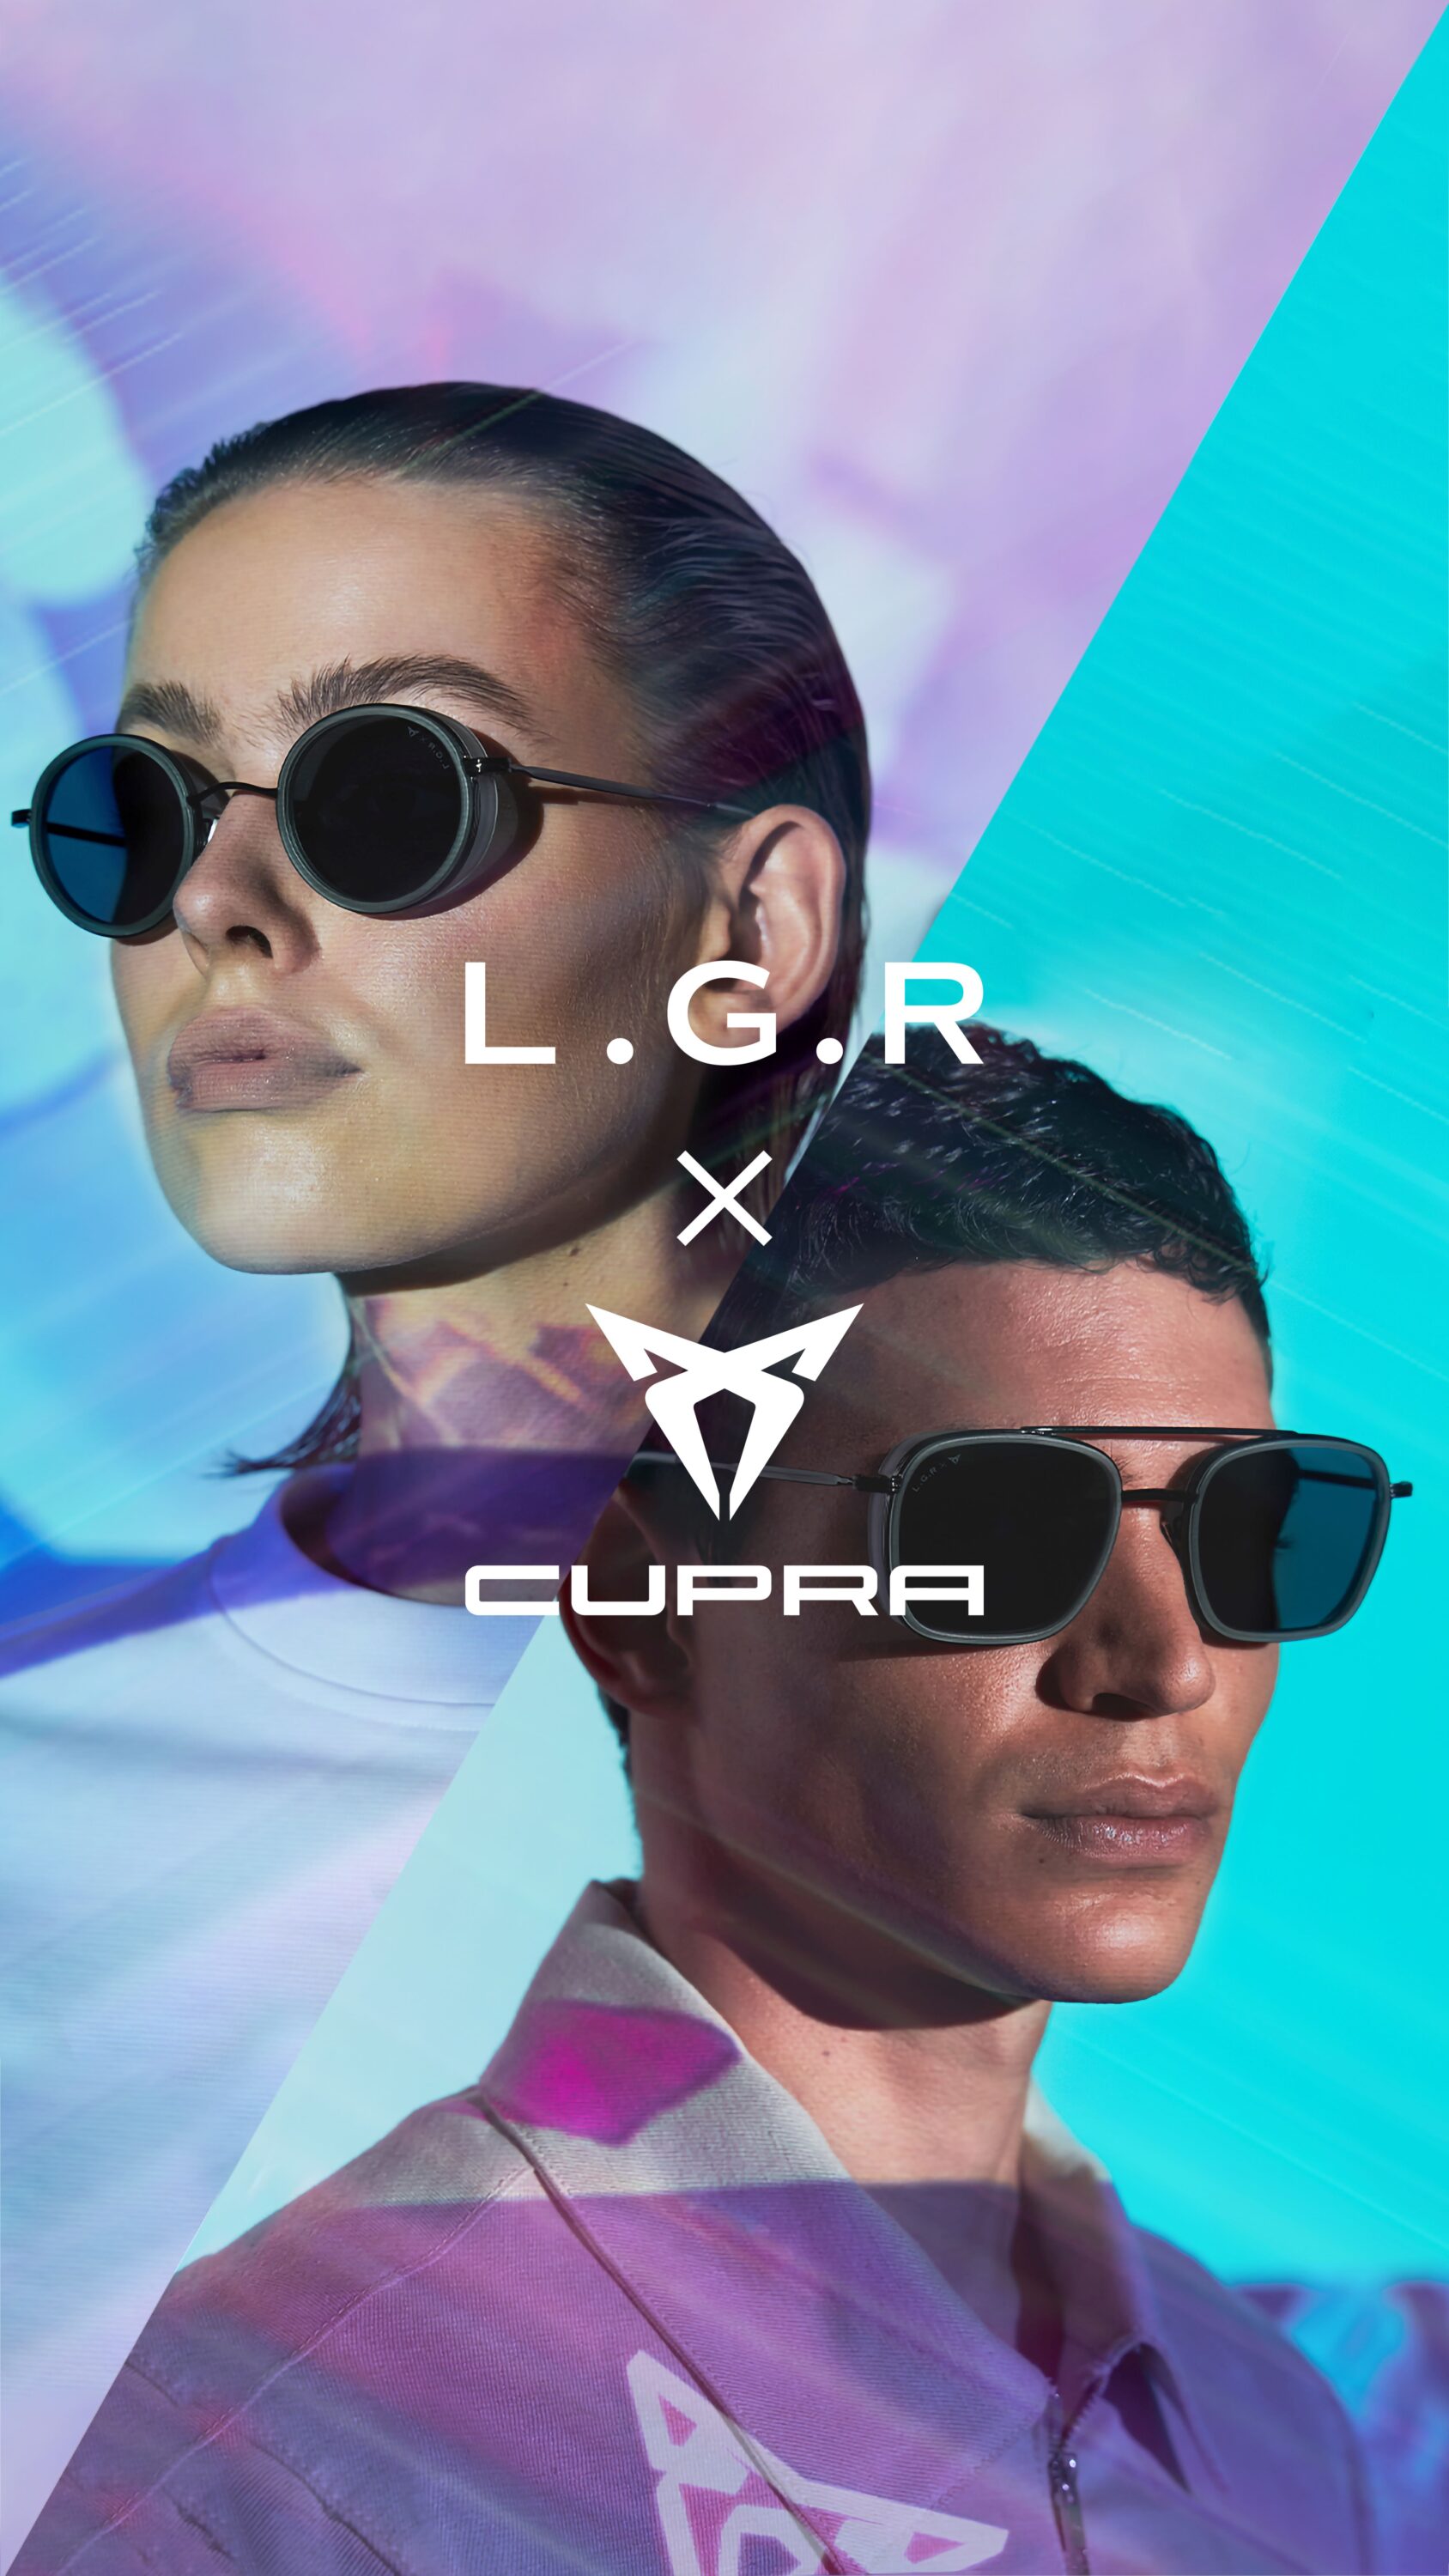 Promo photo of models wearing Cupra and LGR eyewear.